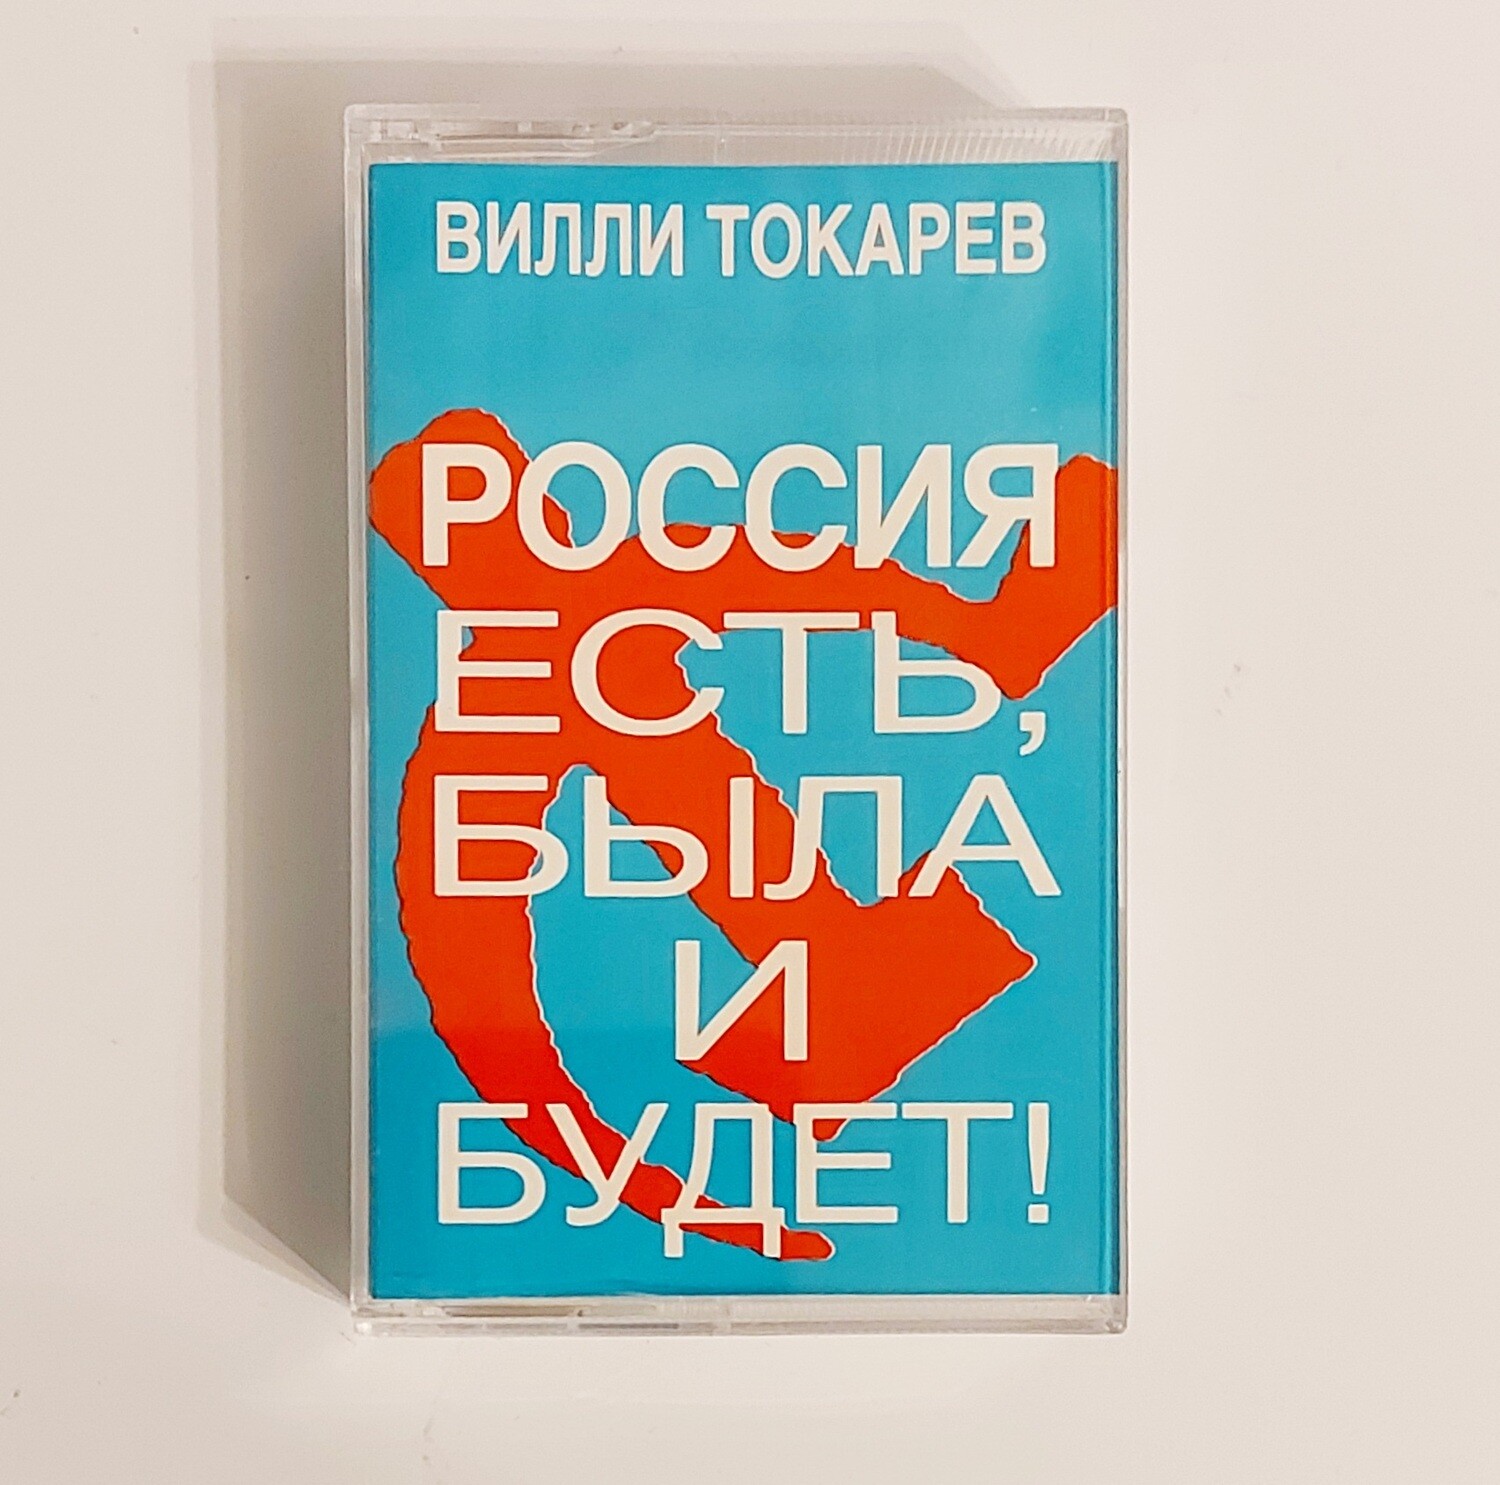 MC: Вилли Токарев — «Россия Есть, Была И Будет» (1993) [USA Tape Edition]